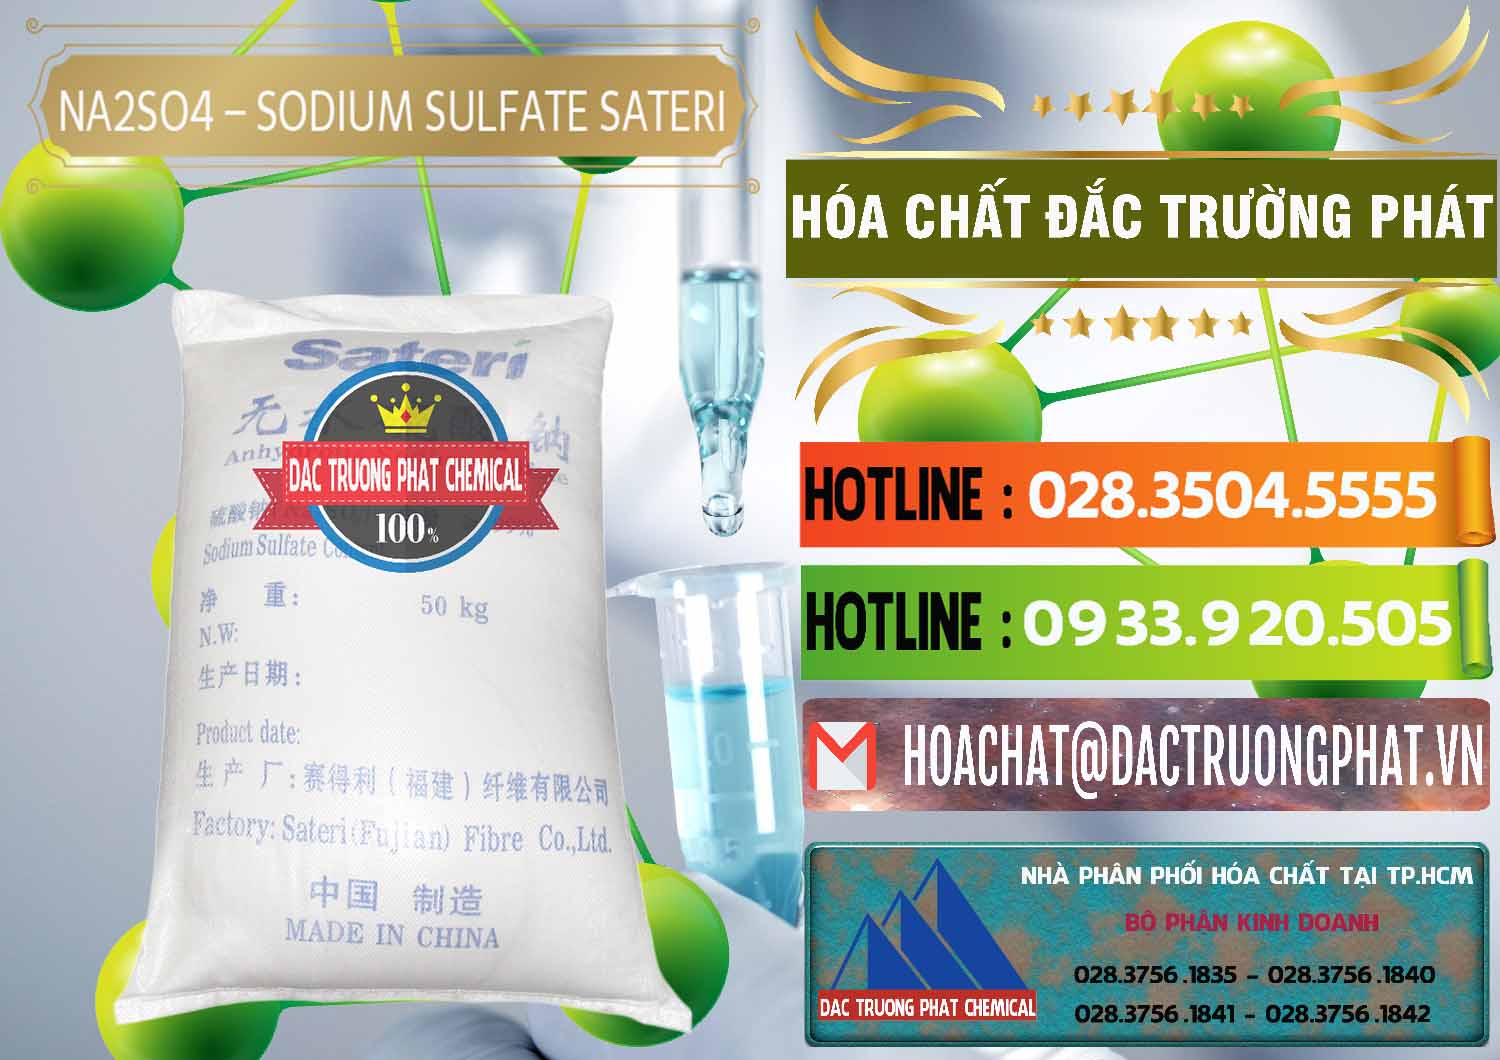 Cty chuyên phân phối ( bán ) Sodium Sulphate - Muối Sunfat Na2SO4 Sateri Trung Quốc China - 0100 - Công ty chuyên phân phối - nhập khẩu hóa chất tại TP.HCM - cungcaphoachat.com.vn